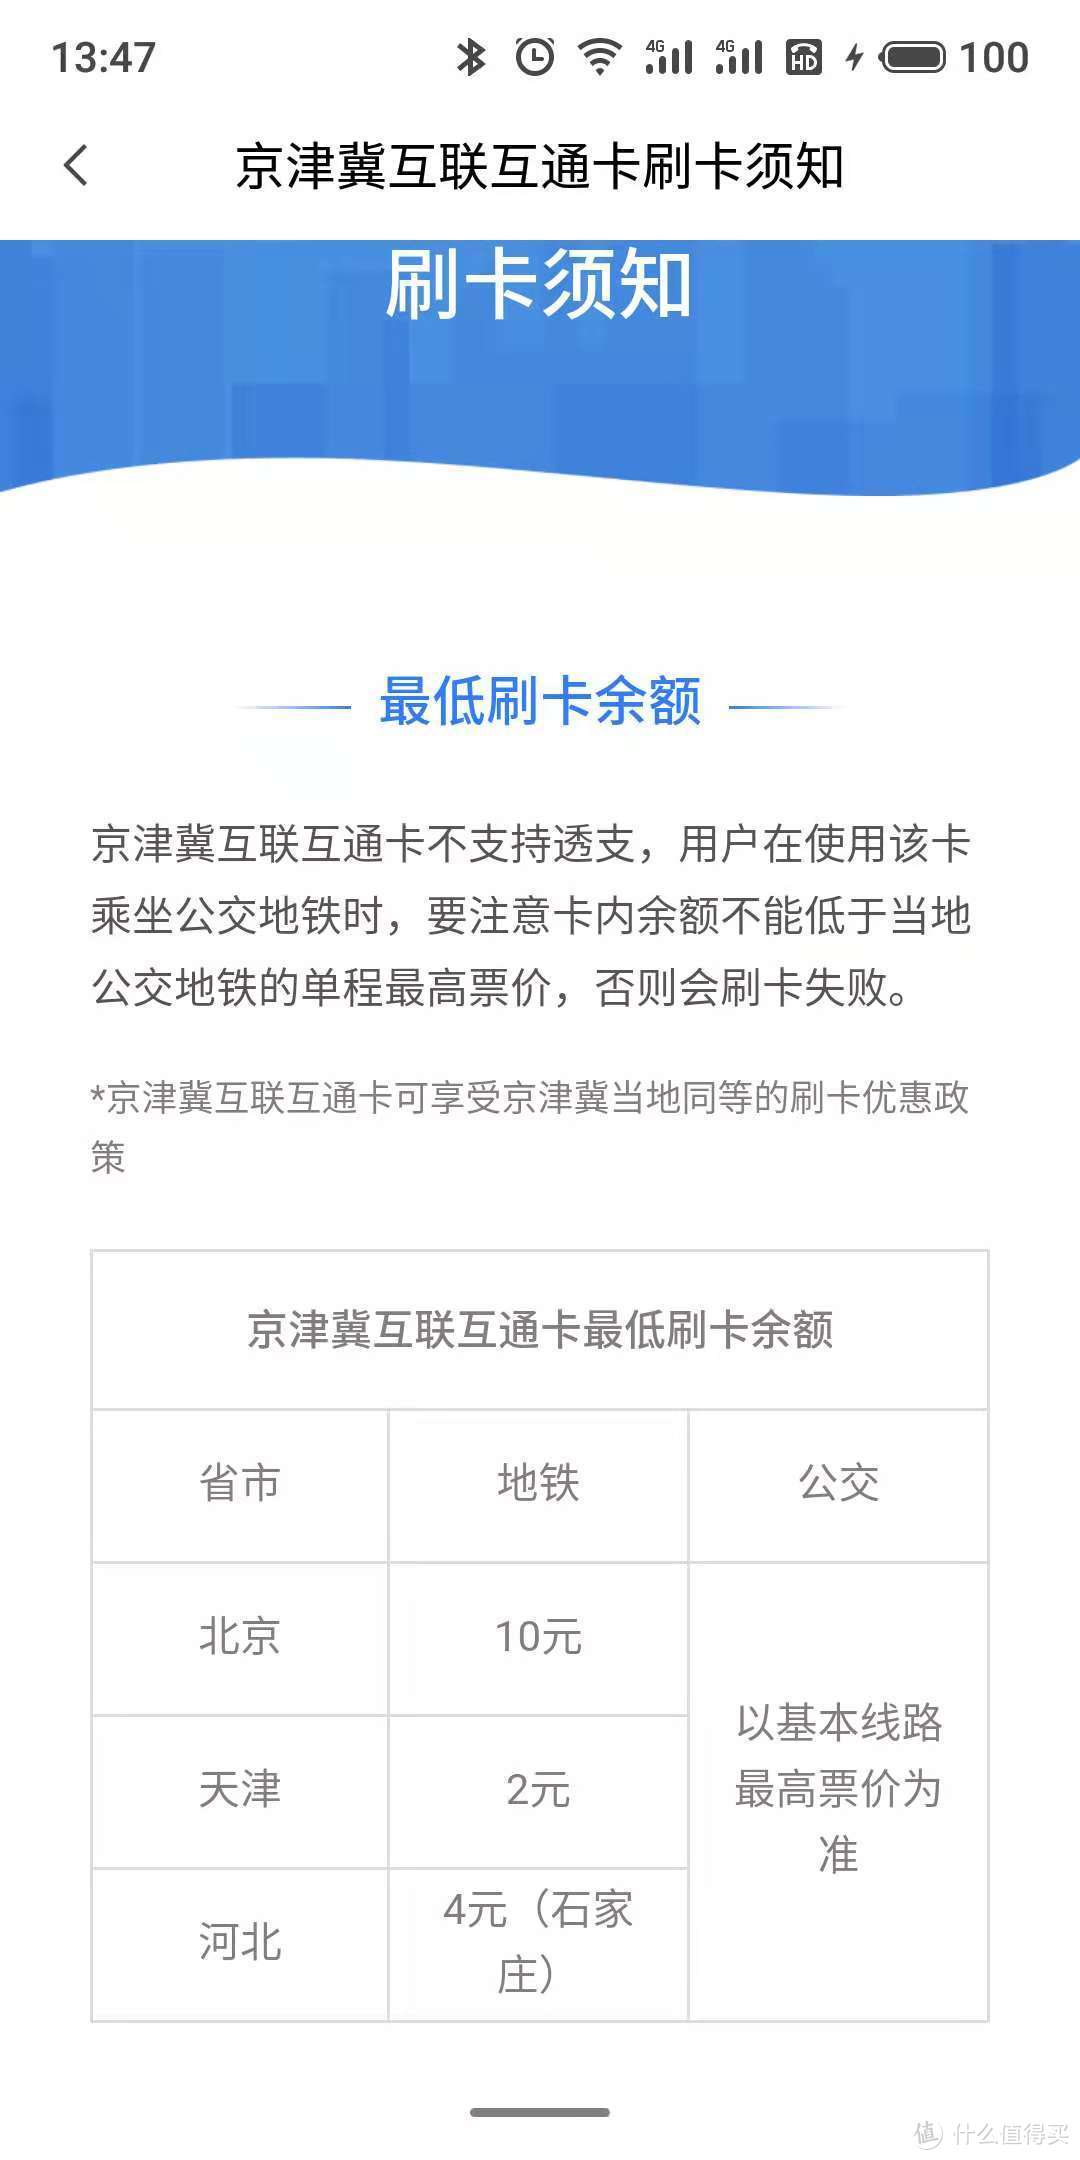 系统提示开卡后注意余额，北京小于10就不能正常使用了